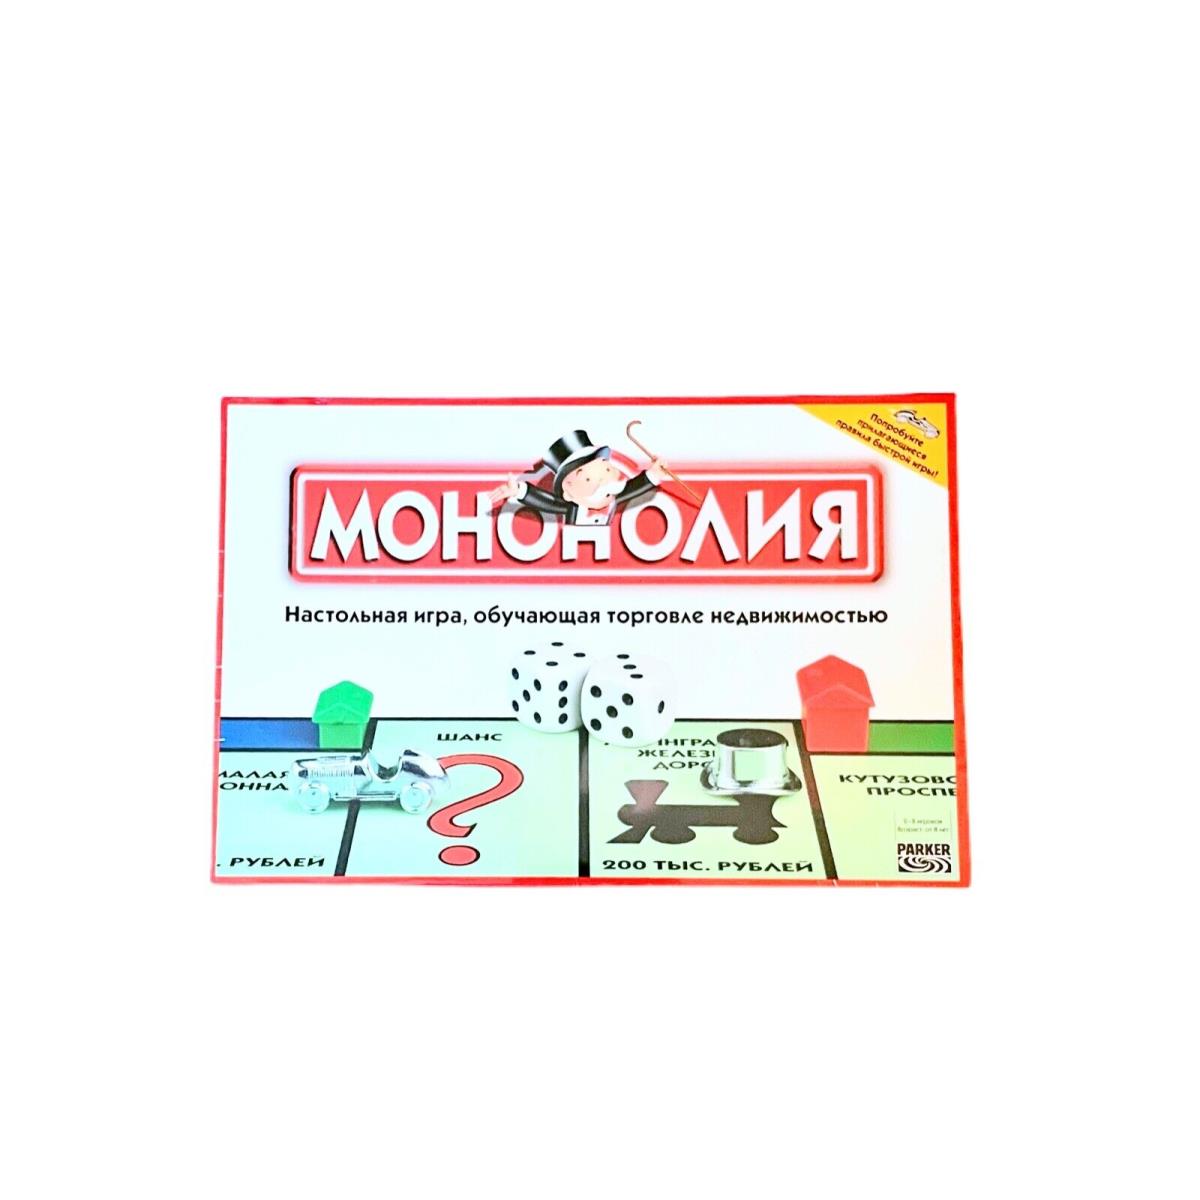 Monopoly Board Game Russian Edition 2004 Rare